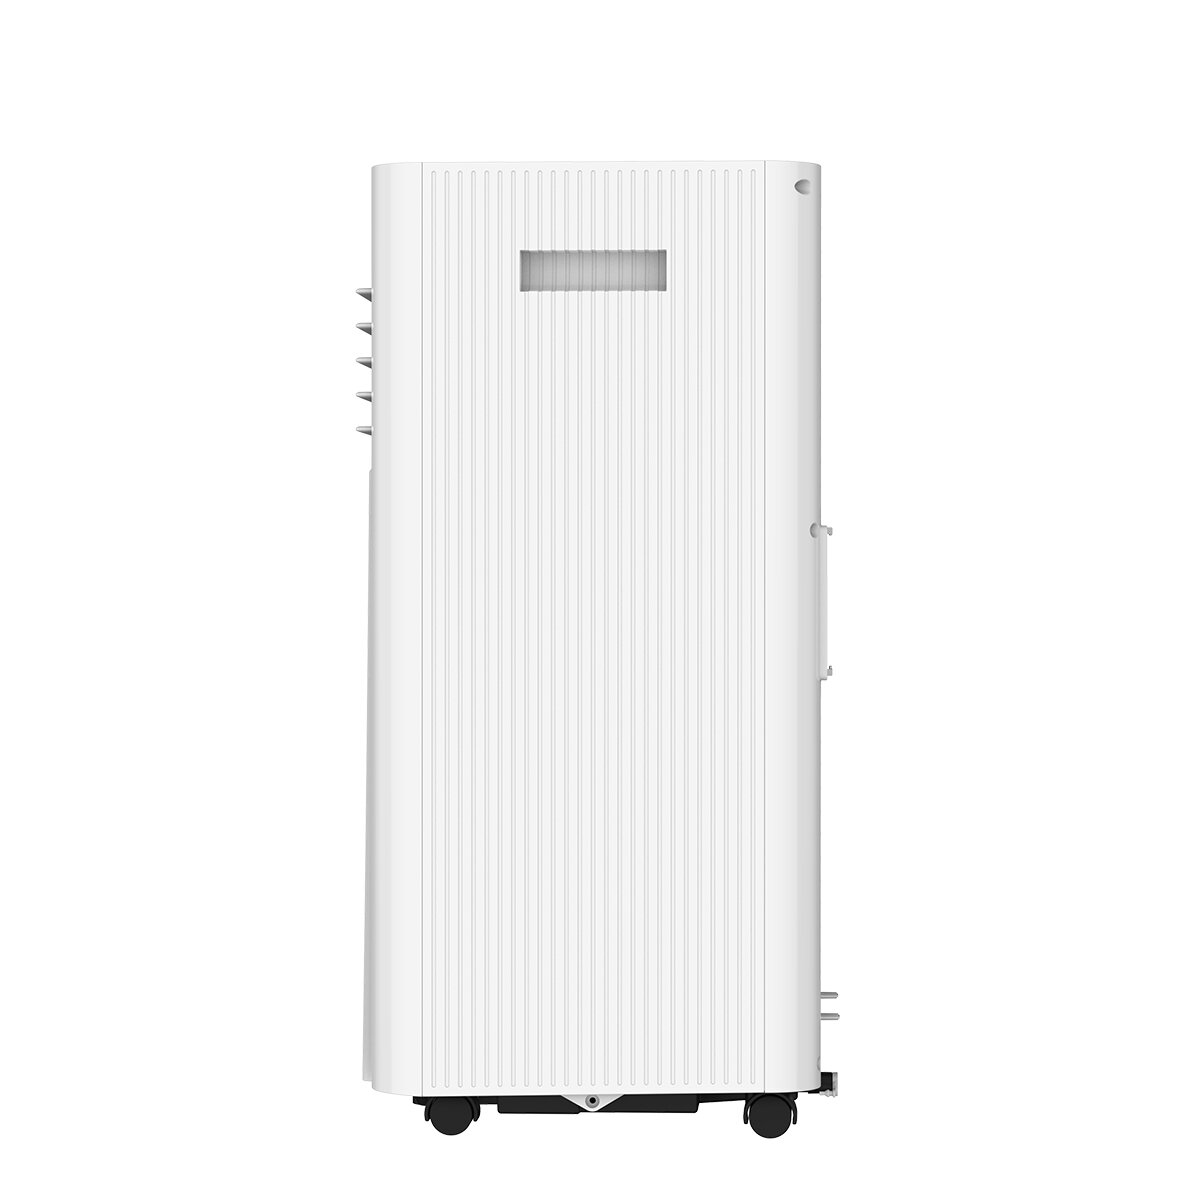 Meaco Air Conditioner